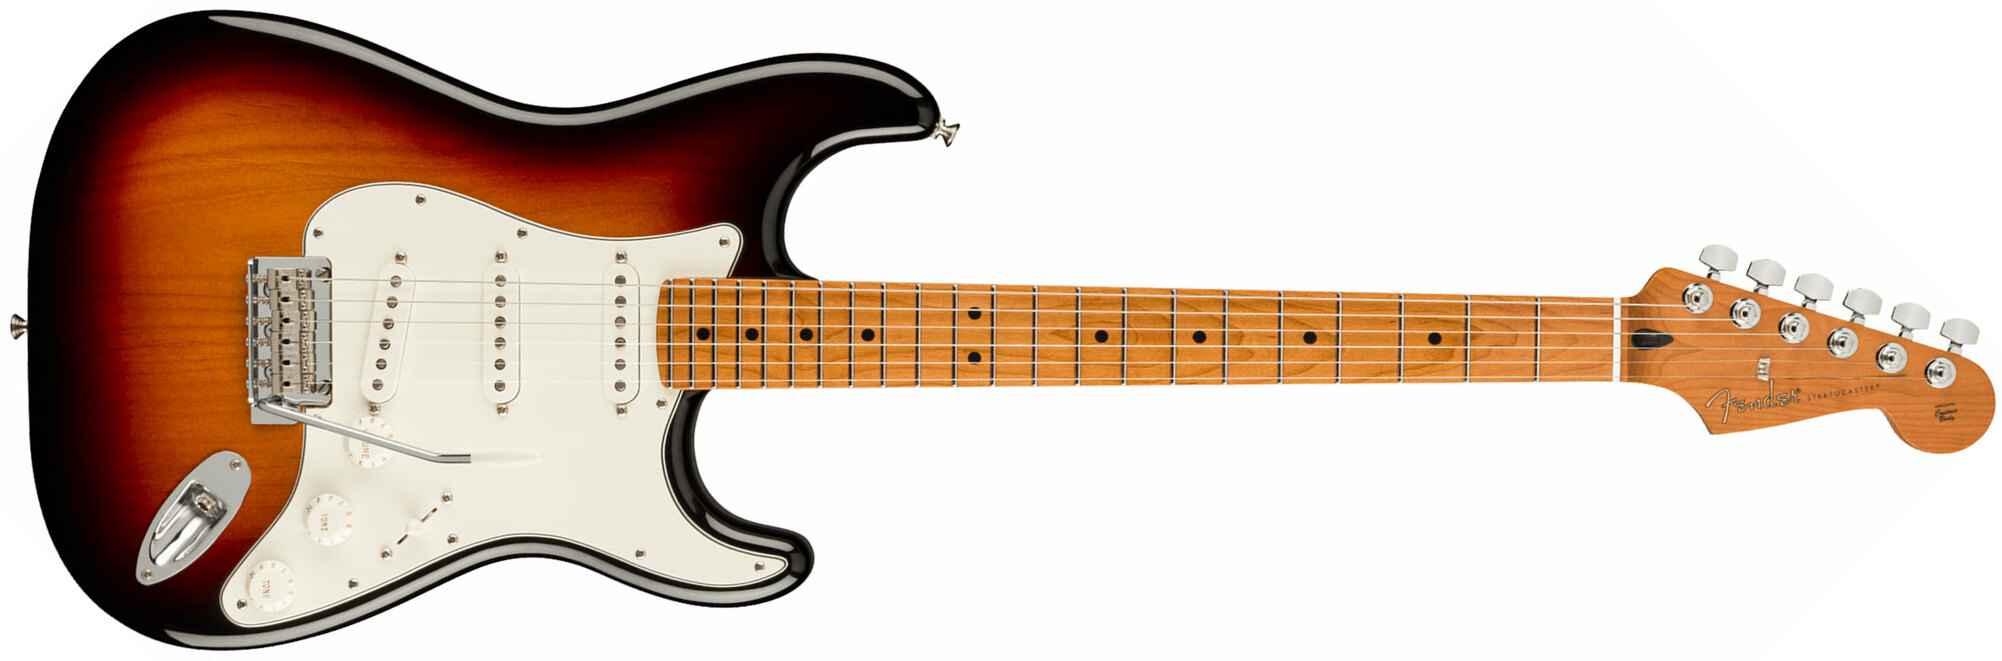 Fender Strat Player Roasted Maple Neck Ltd Mex 3s Trem Mn - 3 Color Sunburst - Guitarra eléctrica con forma de str. - Main picture